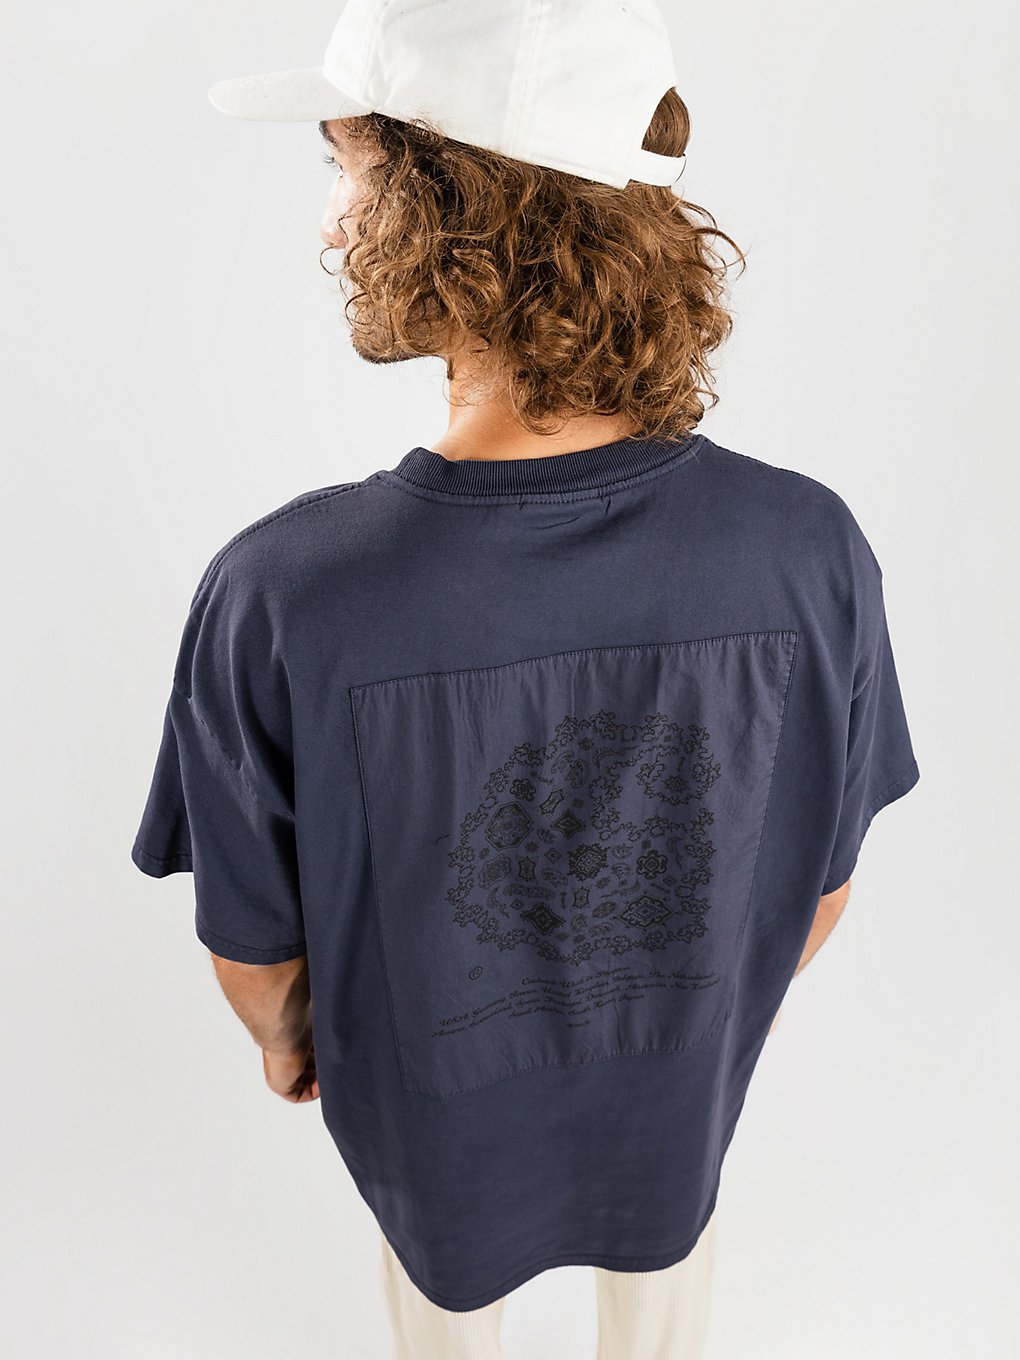 Carhartt WIP Verse Patch T-Shirt garment dyed enzian kaufen